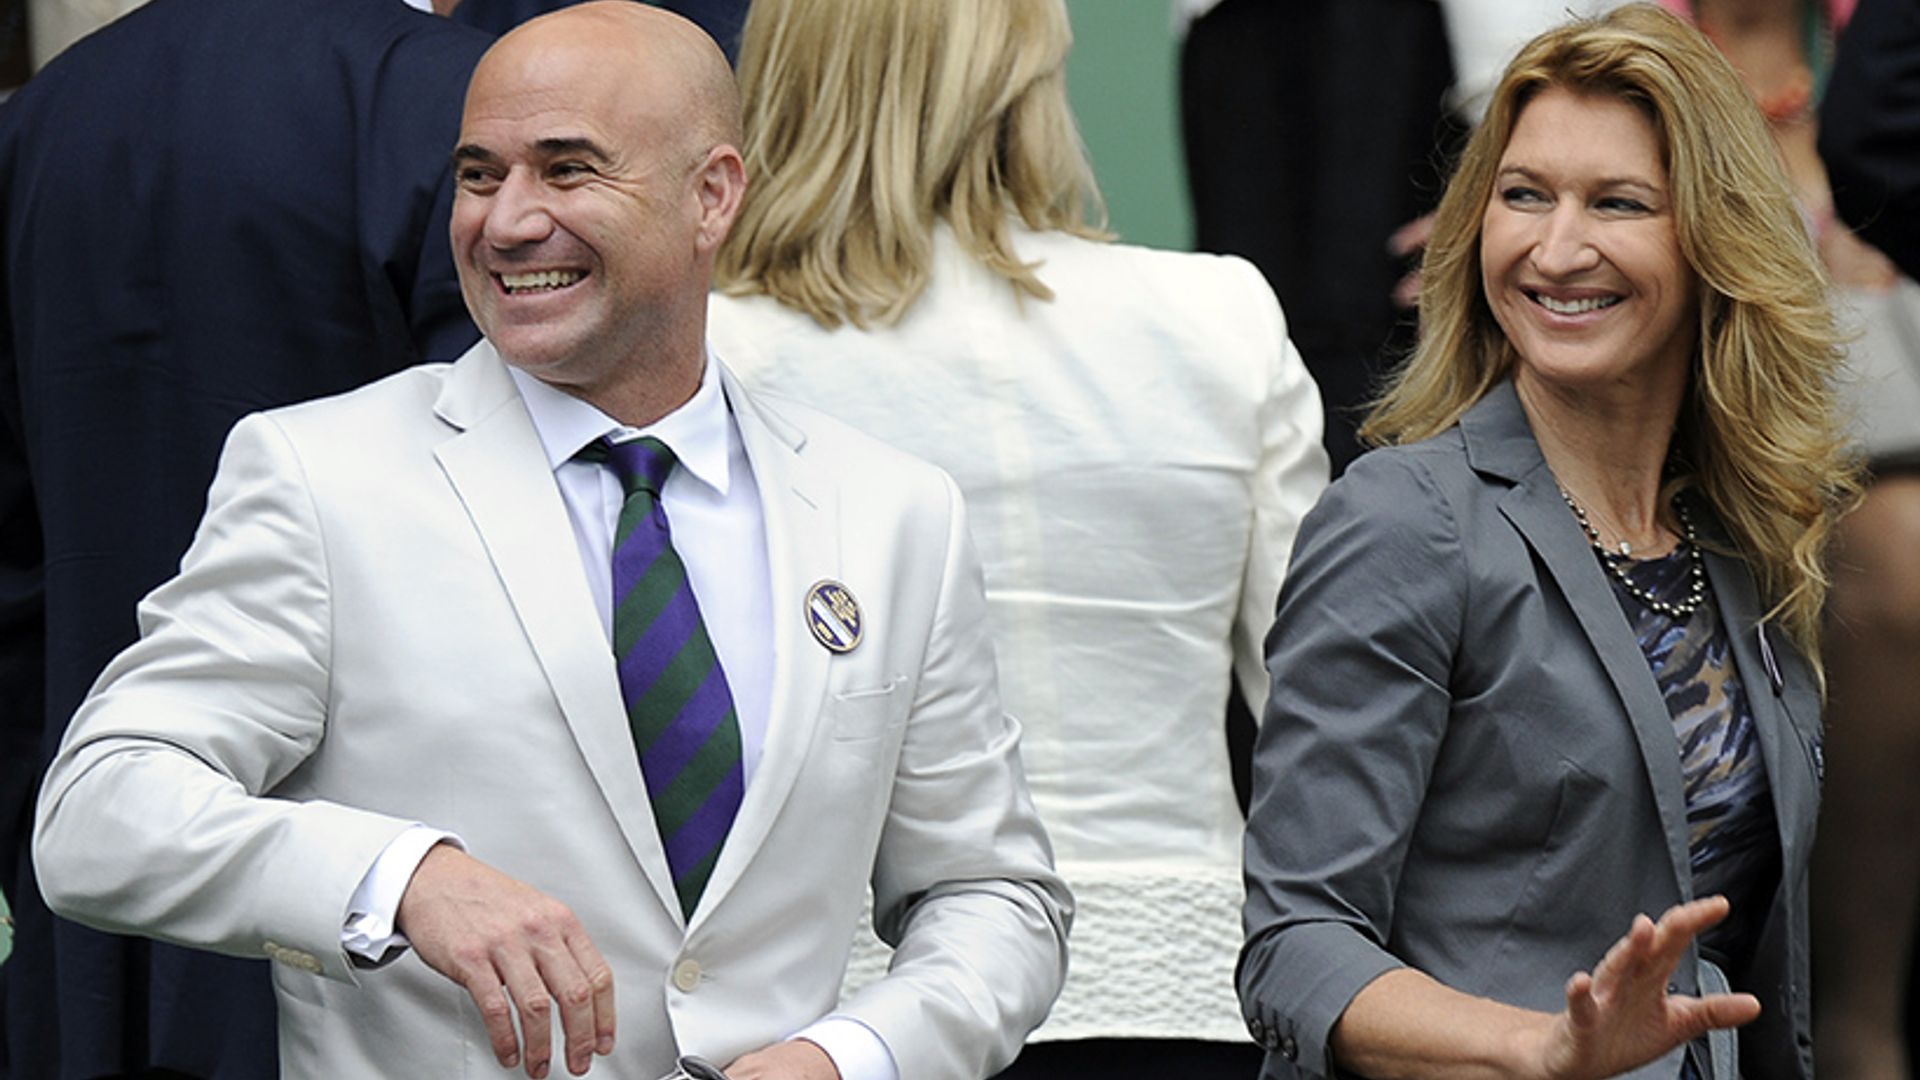 Agassi on meeting Kate Middleton and coaching Djokovic